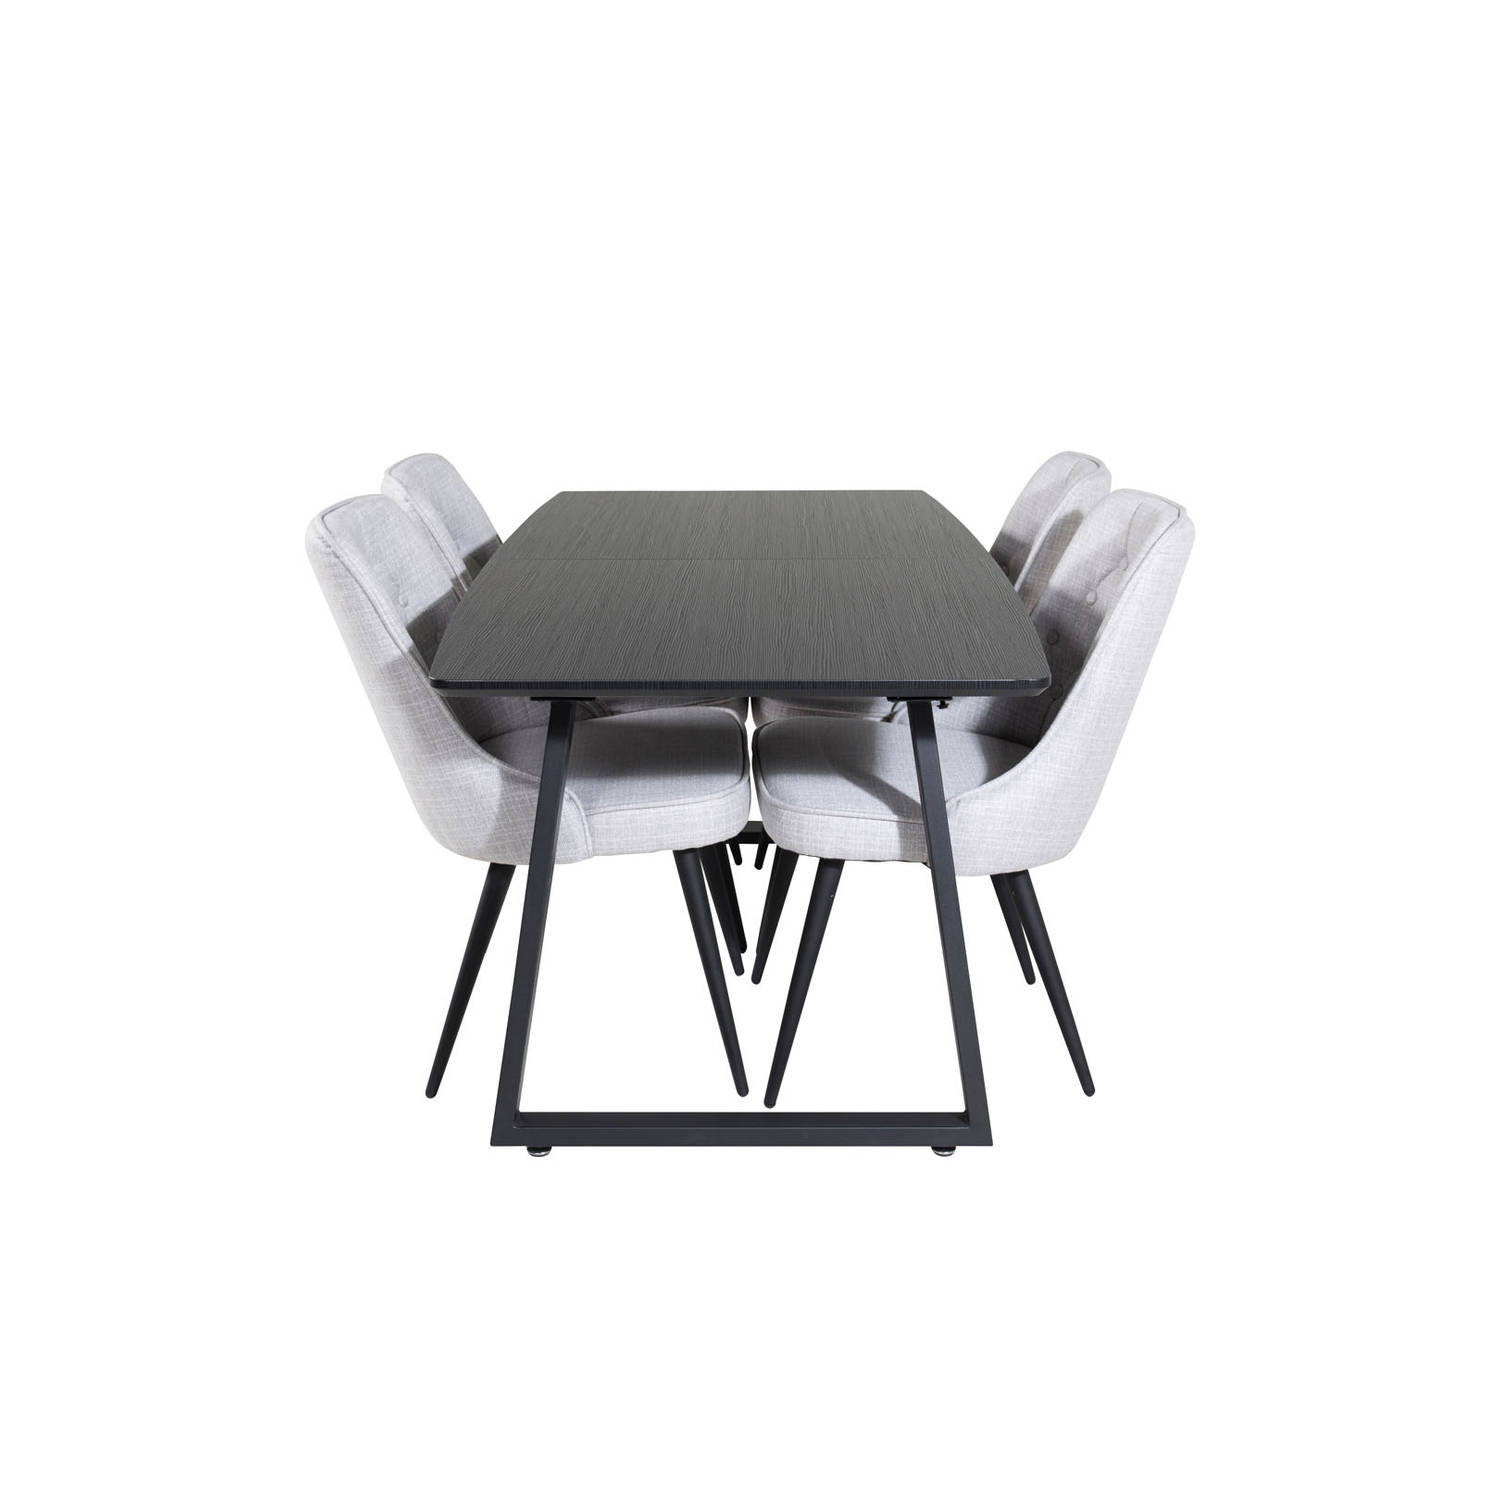 IncaBLBL eethoek eetkamertafel uitschuifbare tafel lengte cm 160 / 200 zwart en 4 Velvet Deluxe eetkamerstal lichtgrijs, zwart.